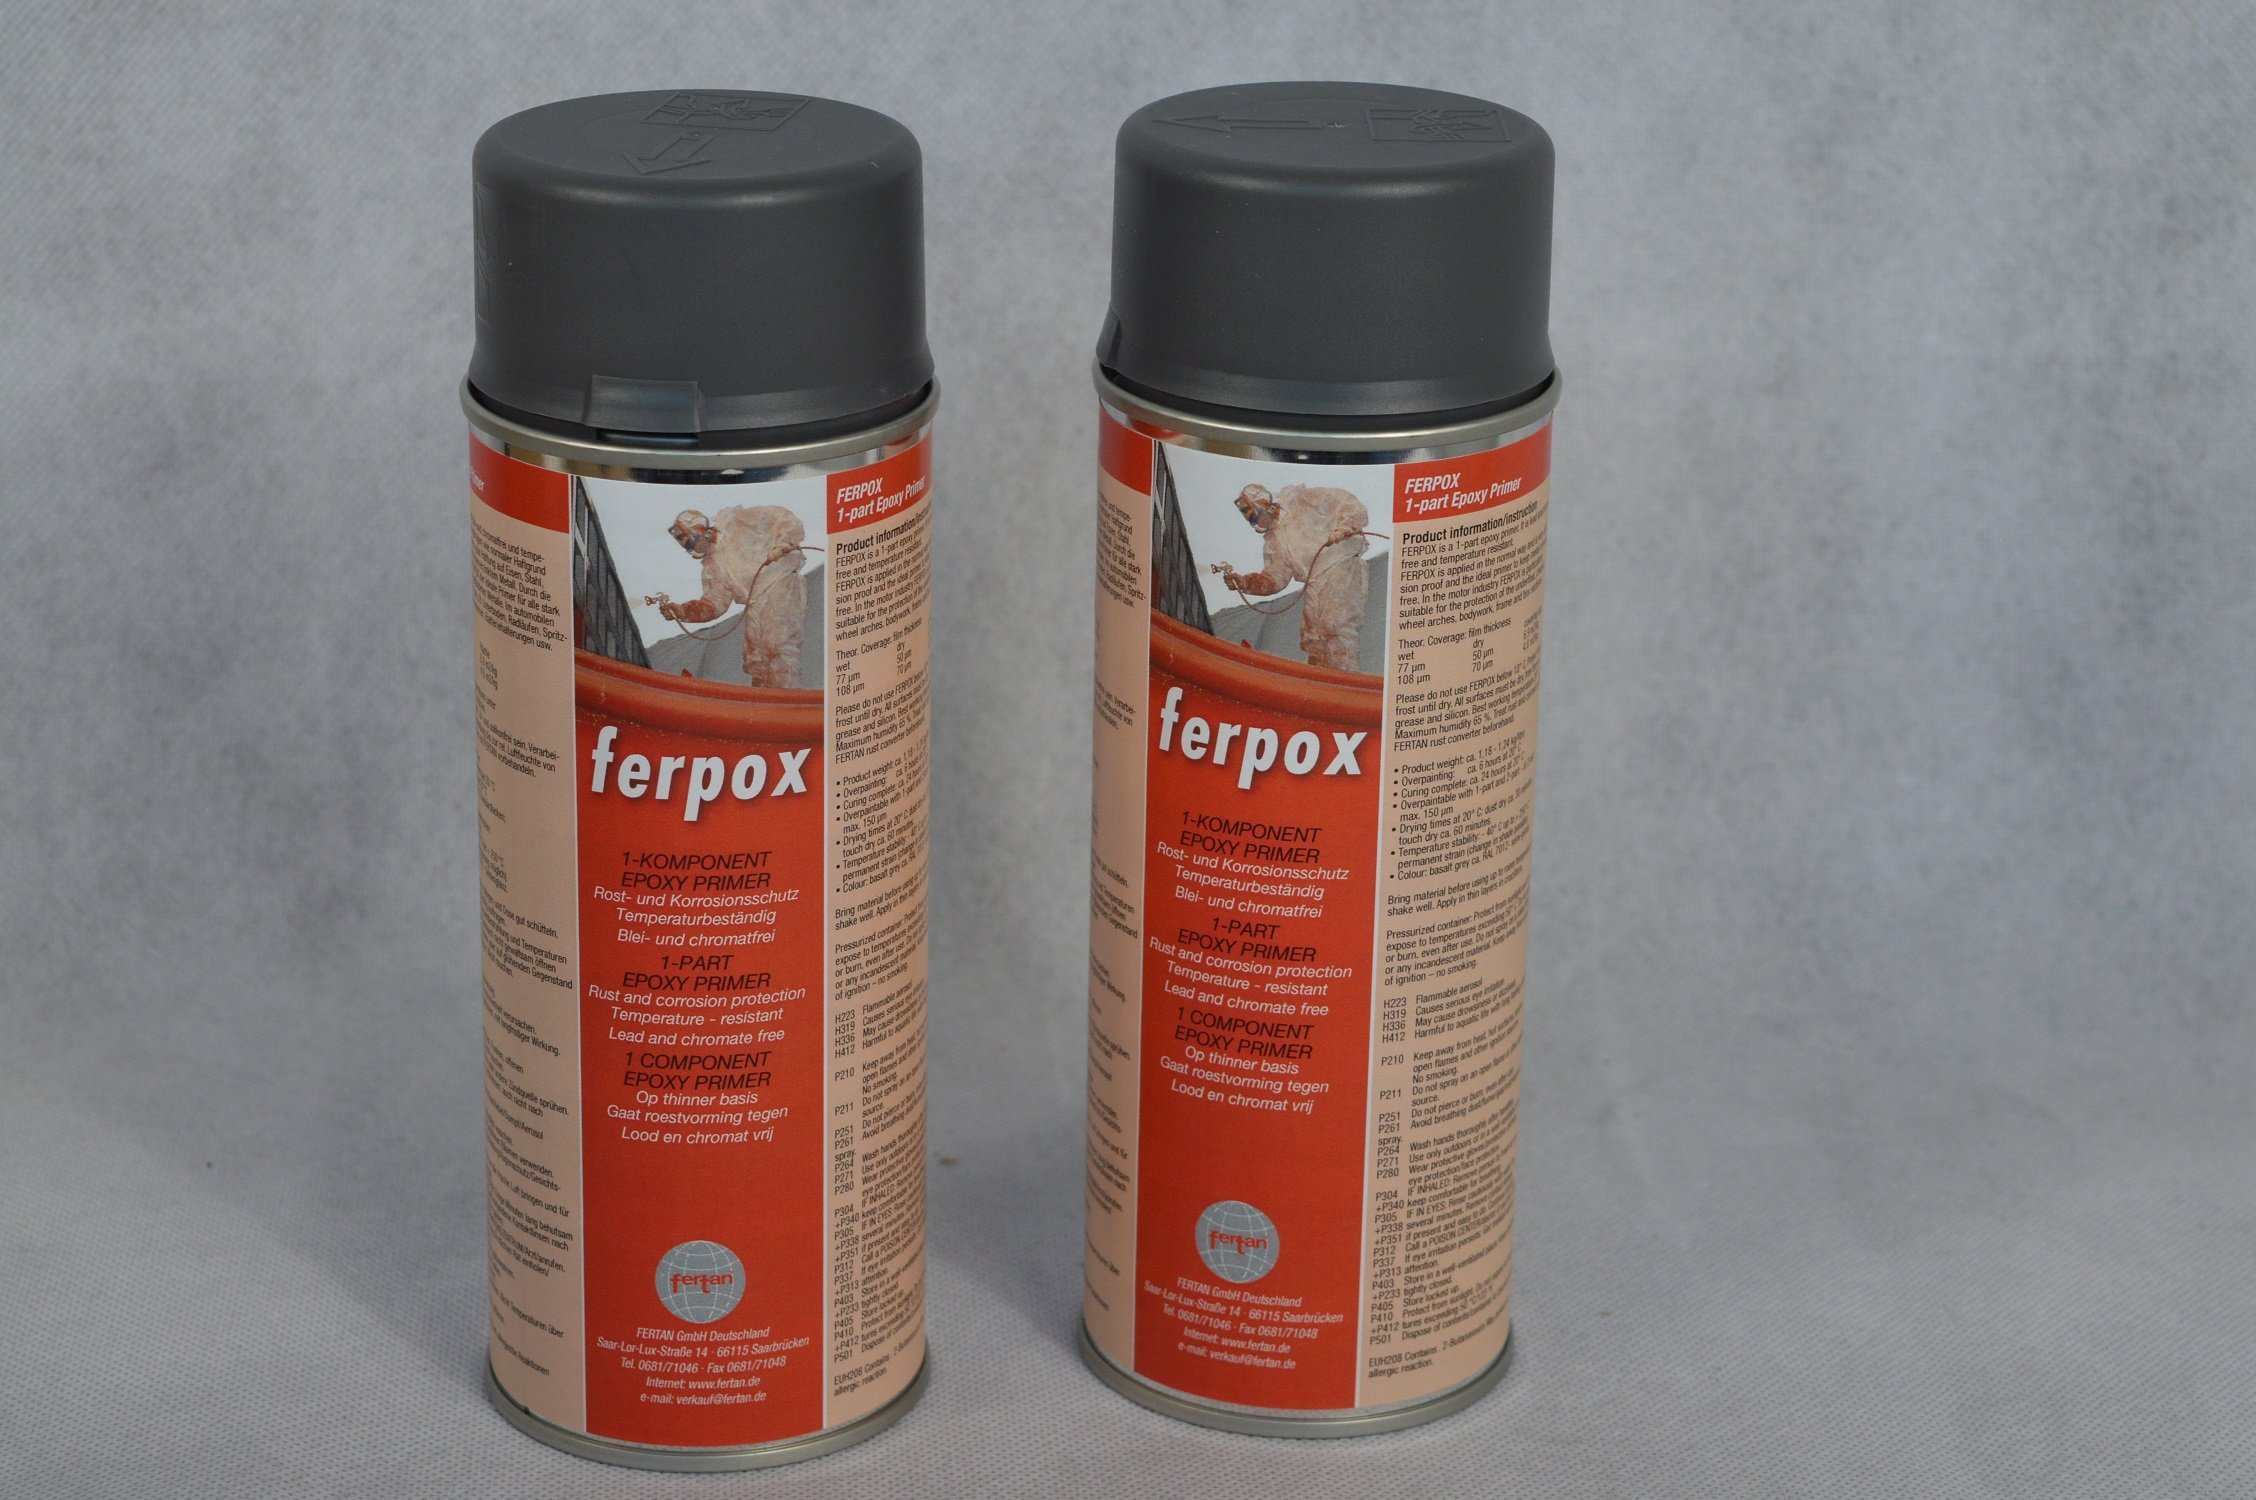 2 X FERTAN Ferpox 1-Komponent Epoxy Primer 400 ml Sprühdose KFZ PKW Restaurieren Werterhalten